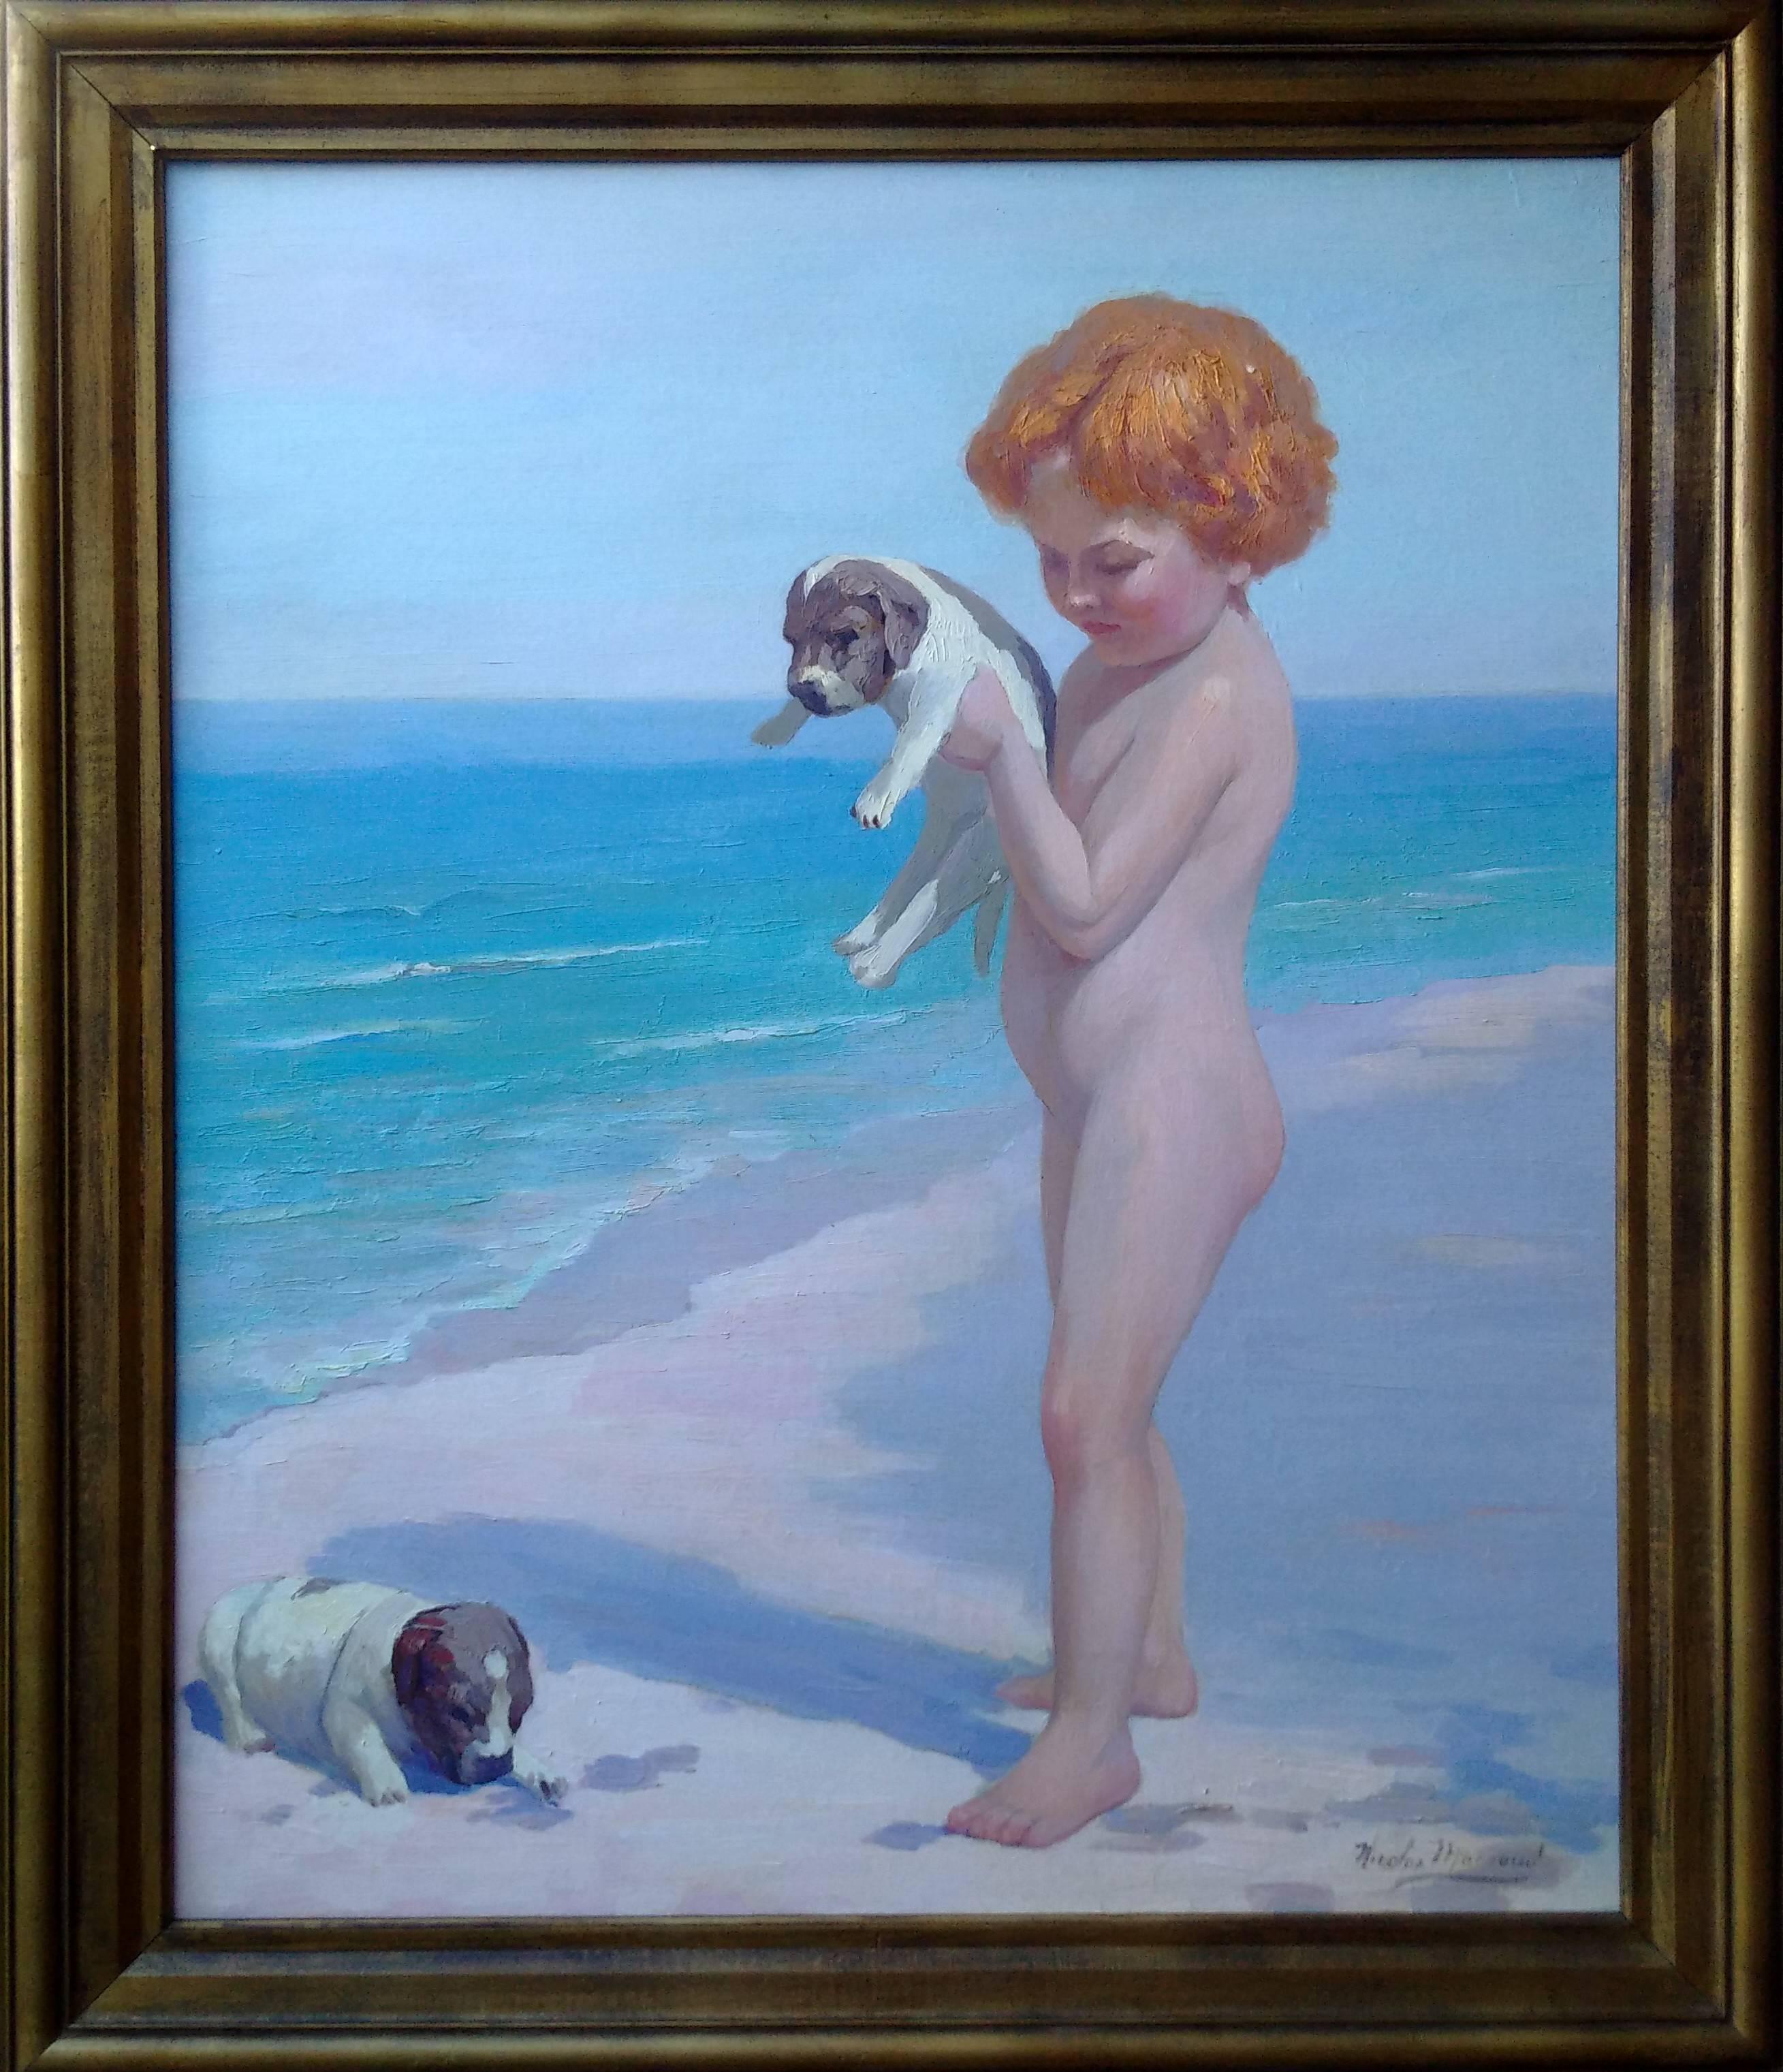 Portrait Painting Nicholas Saleem Macsoud - Child and Baby Dogs on the Beach (Enfant et bébé chiens à la plage), Nicolas-Saleem Macsoud